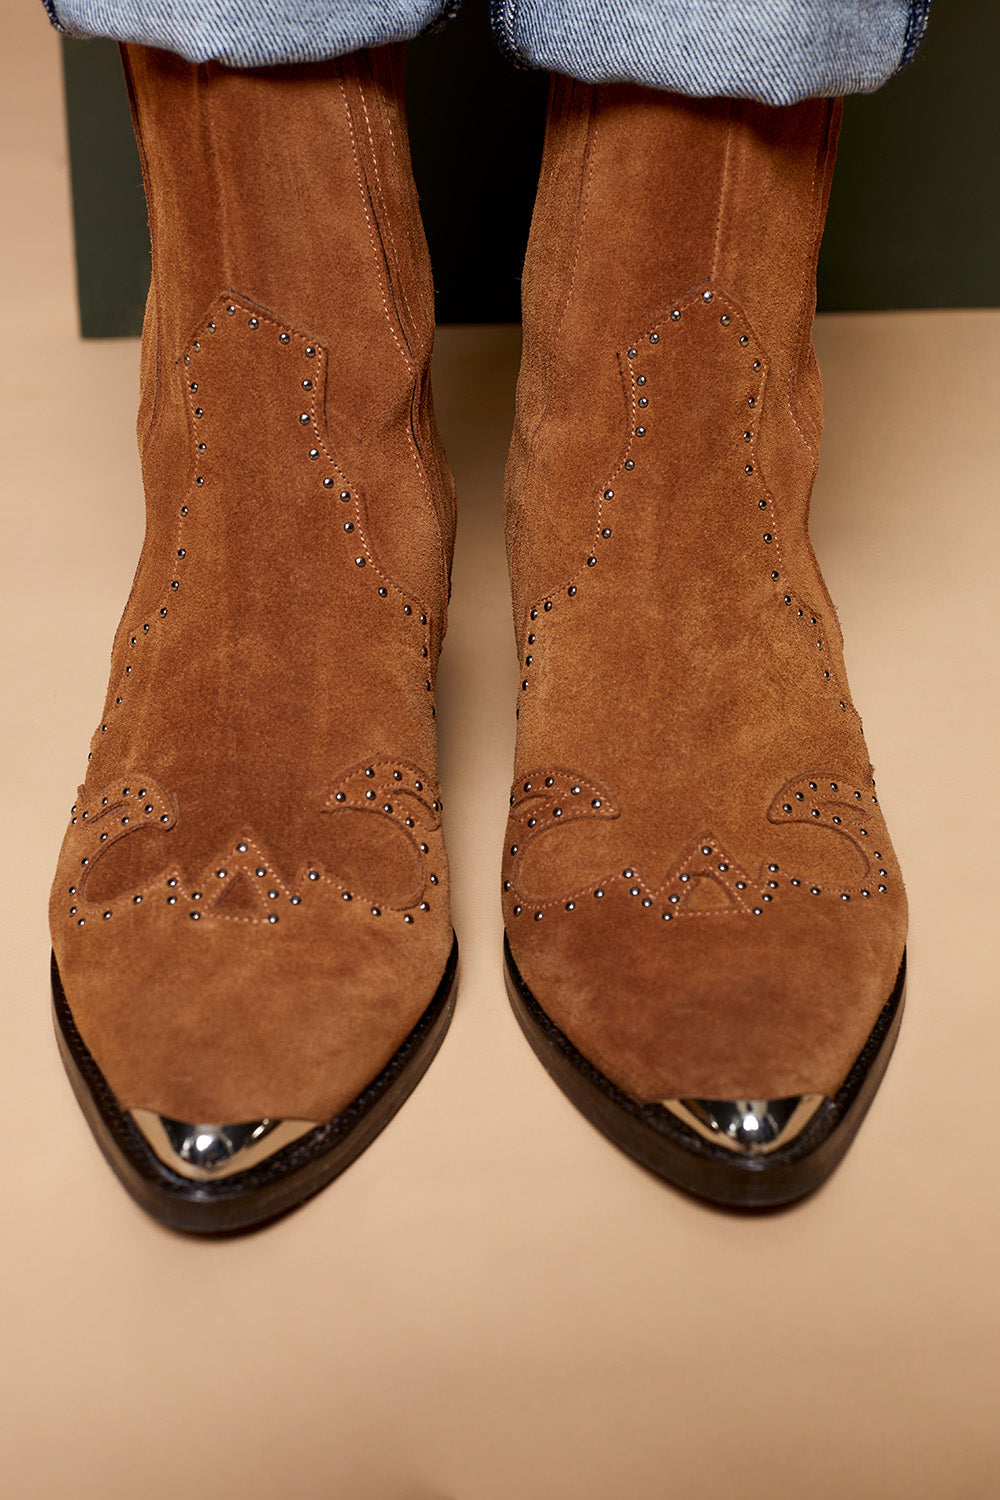 O.ALINE - Boots Western camel en cuir velours à clous